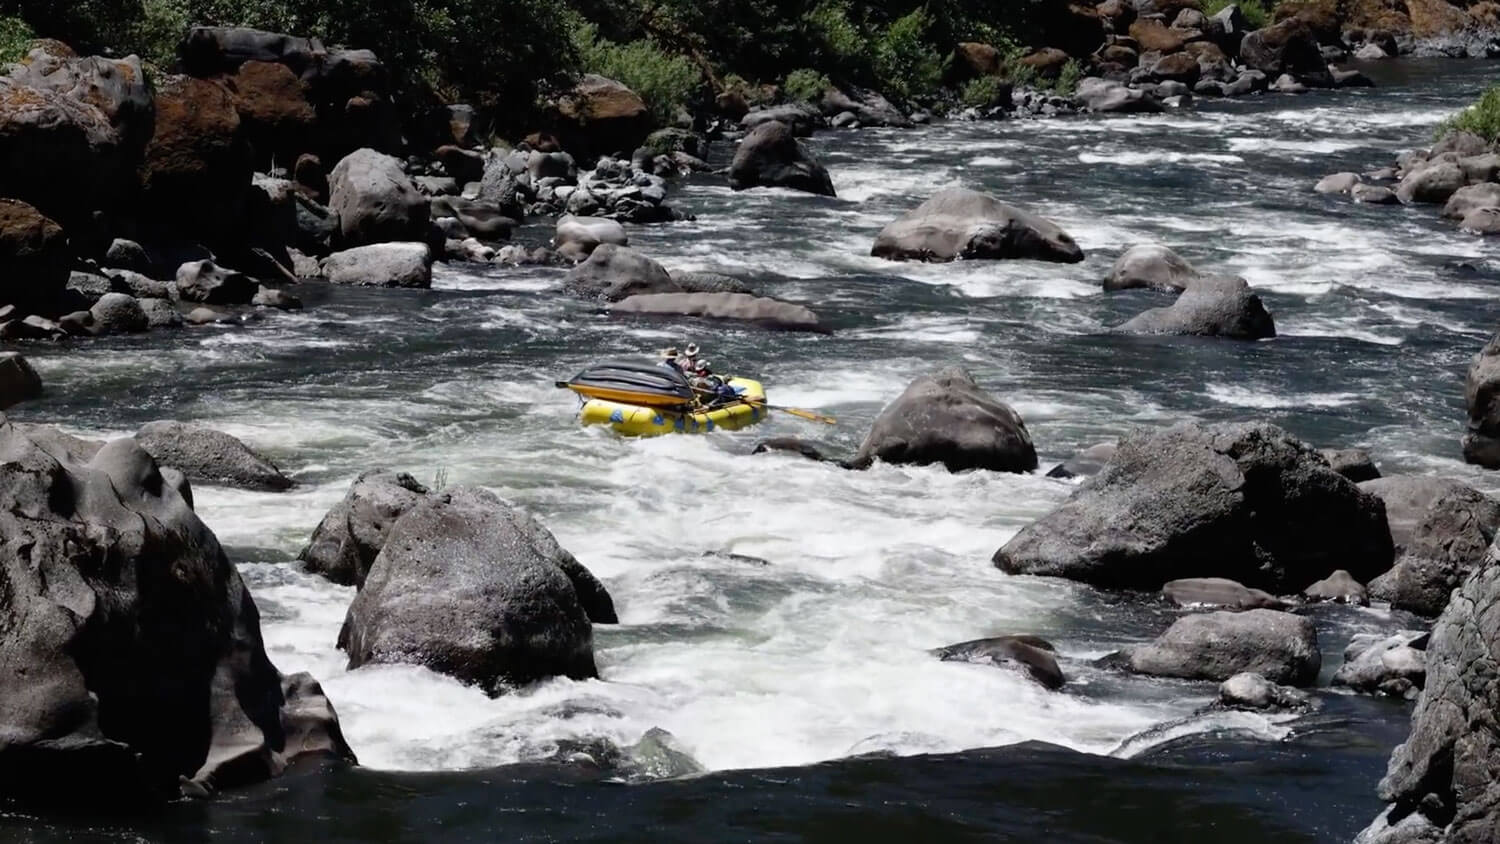 Ep. 1: Rogue River - America's Classic Wild & Scenic River